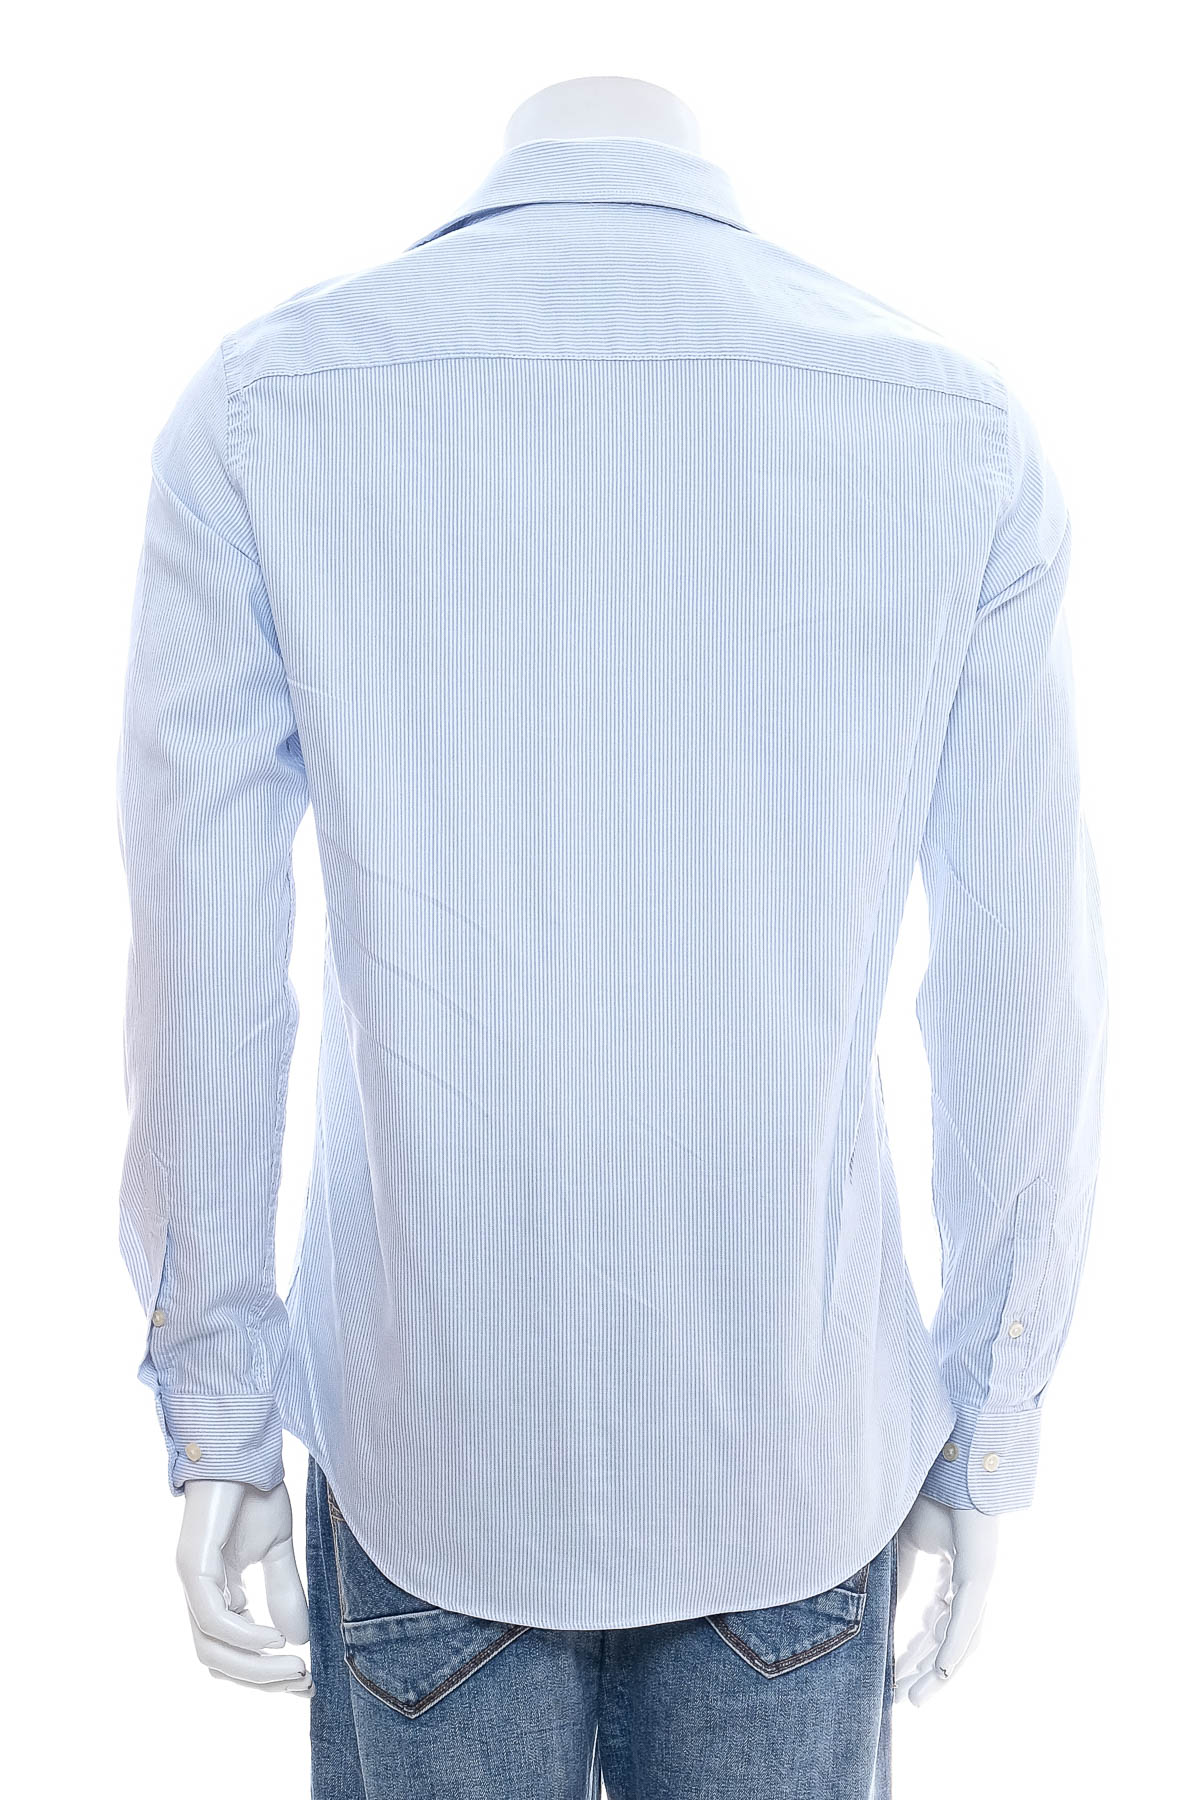 Ανδρικό πουκάμισο - Luc Brevet - 1